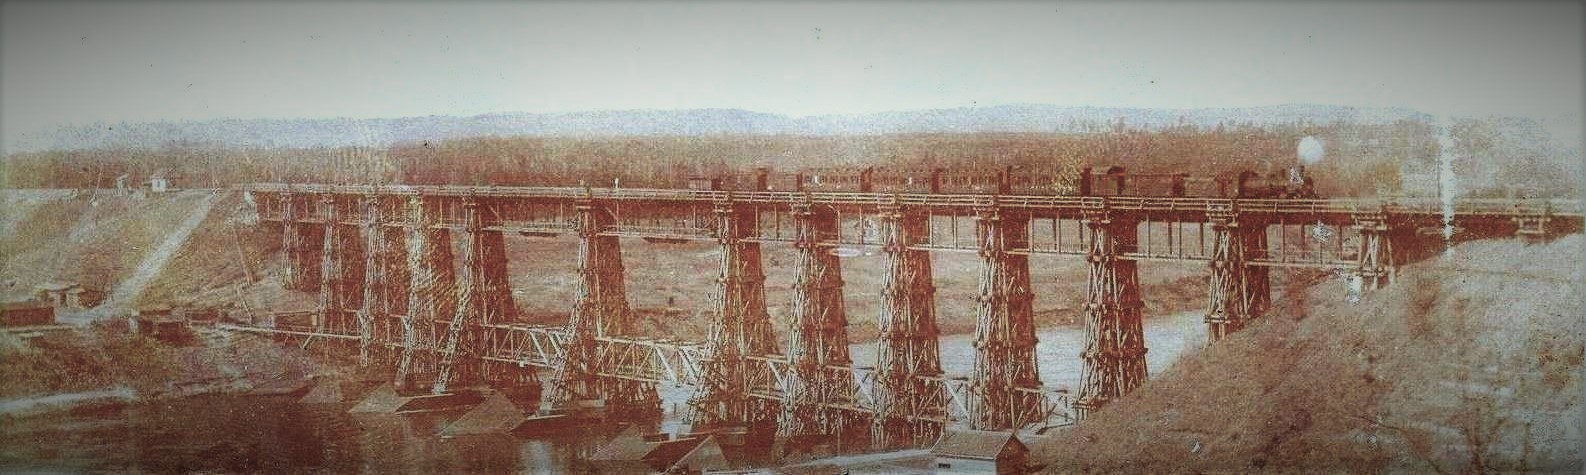 Laikinas medinis tiltas Alytuje